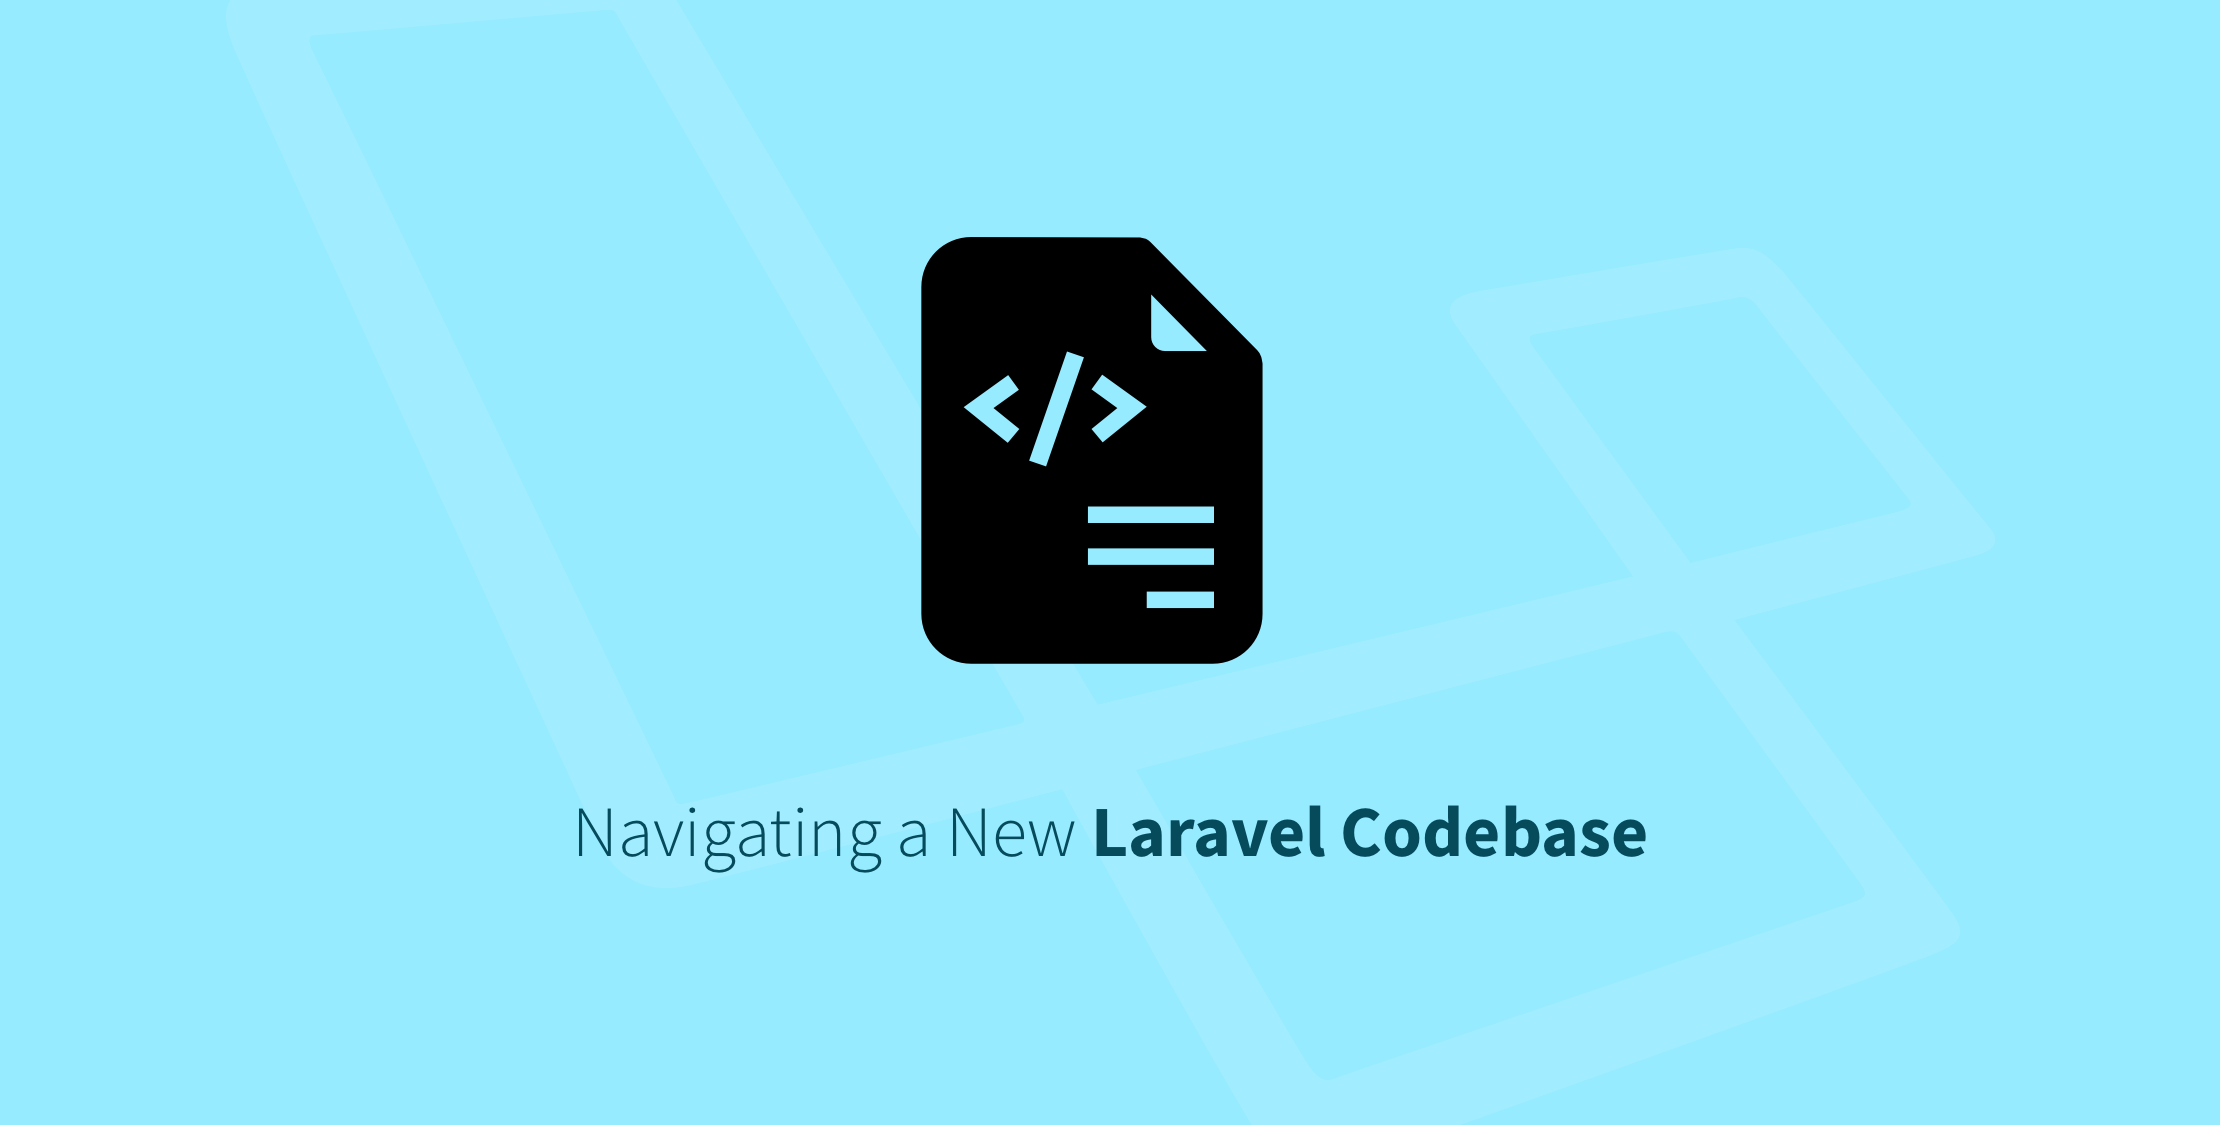 Navigating a New Laravel Codebase image